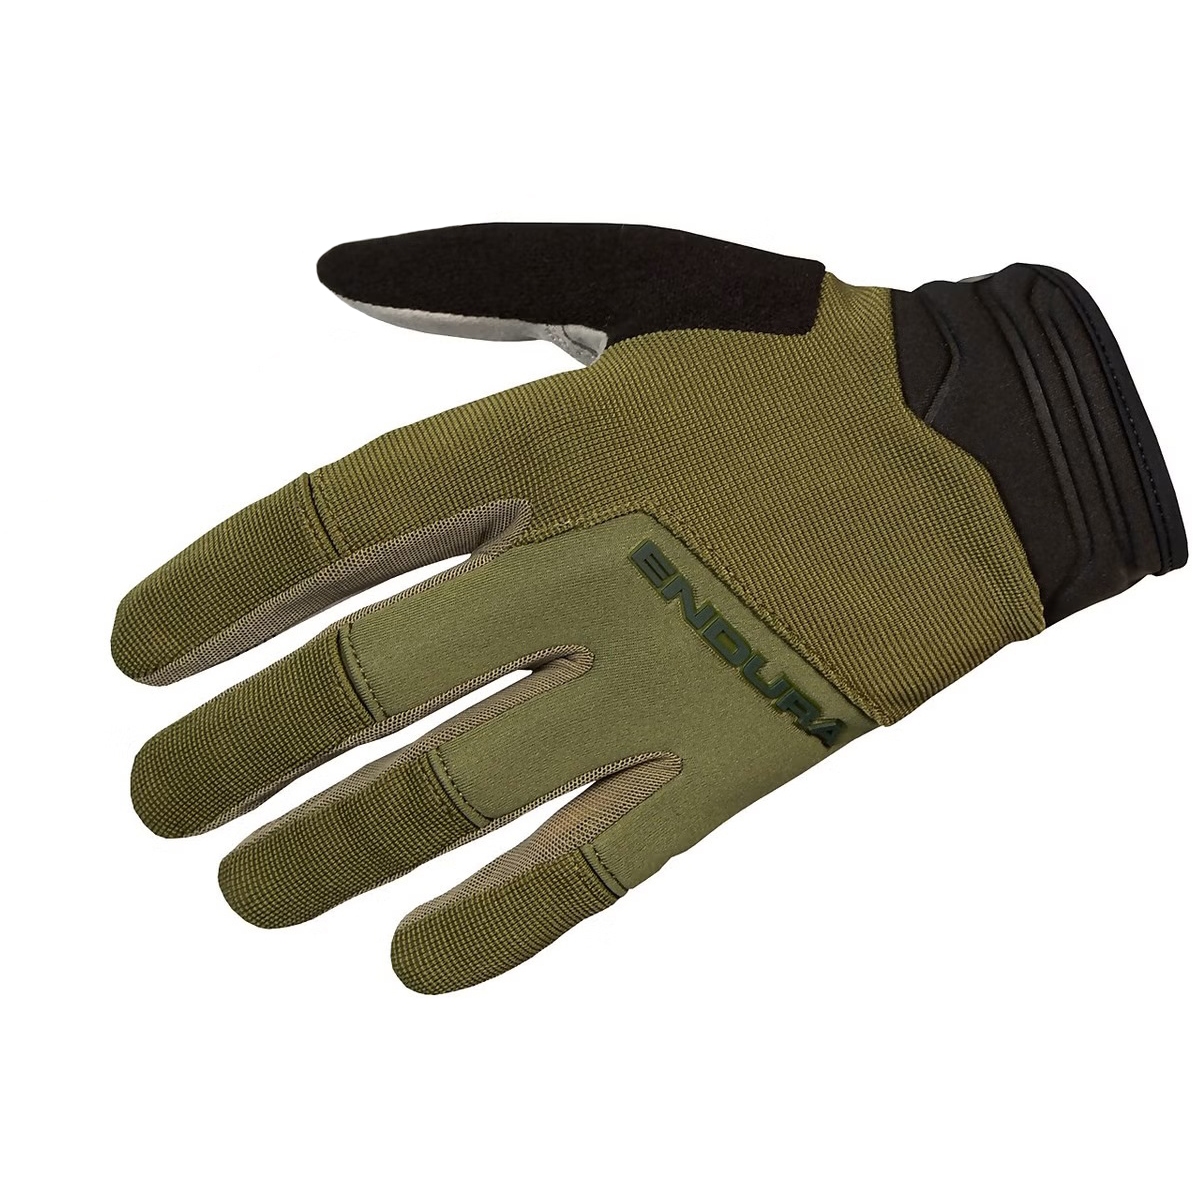 Productfoto van Endura Hummvee Plus II Handschoenen - olive green